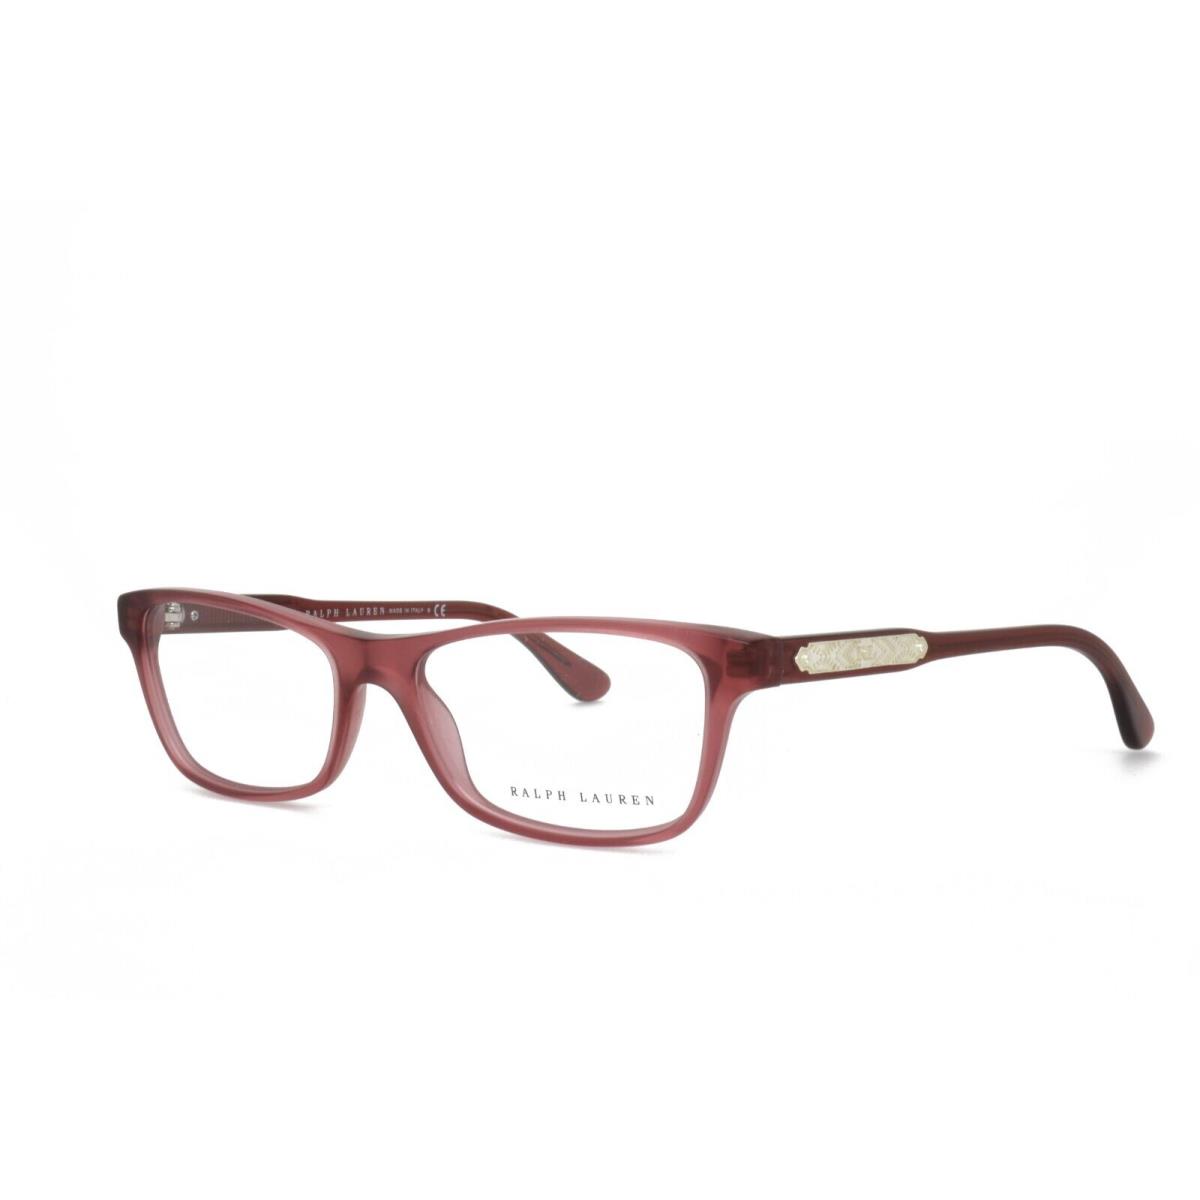 Ralph Lauren 6115 5473 53-16-140 Matte Pink Eyeglasses Frames